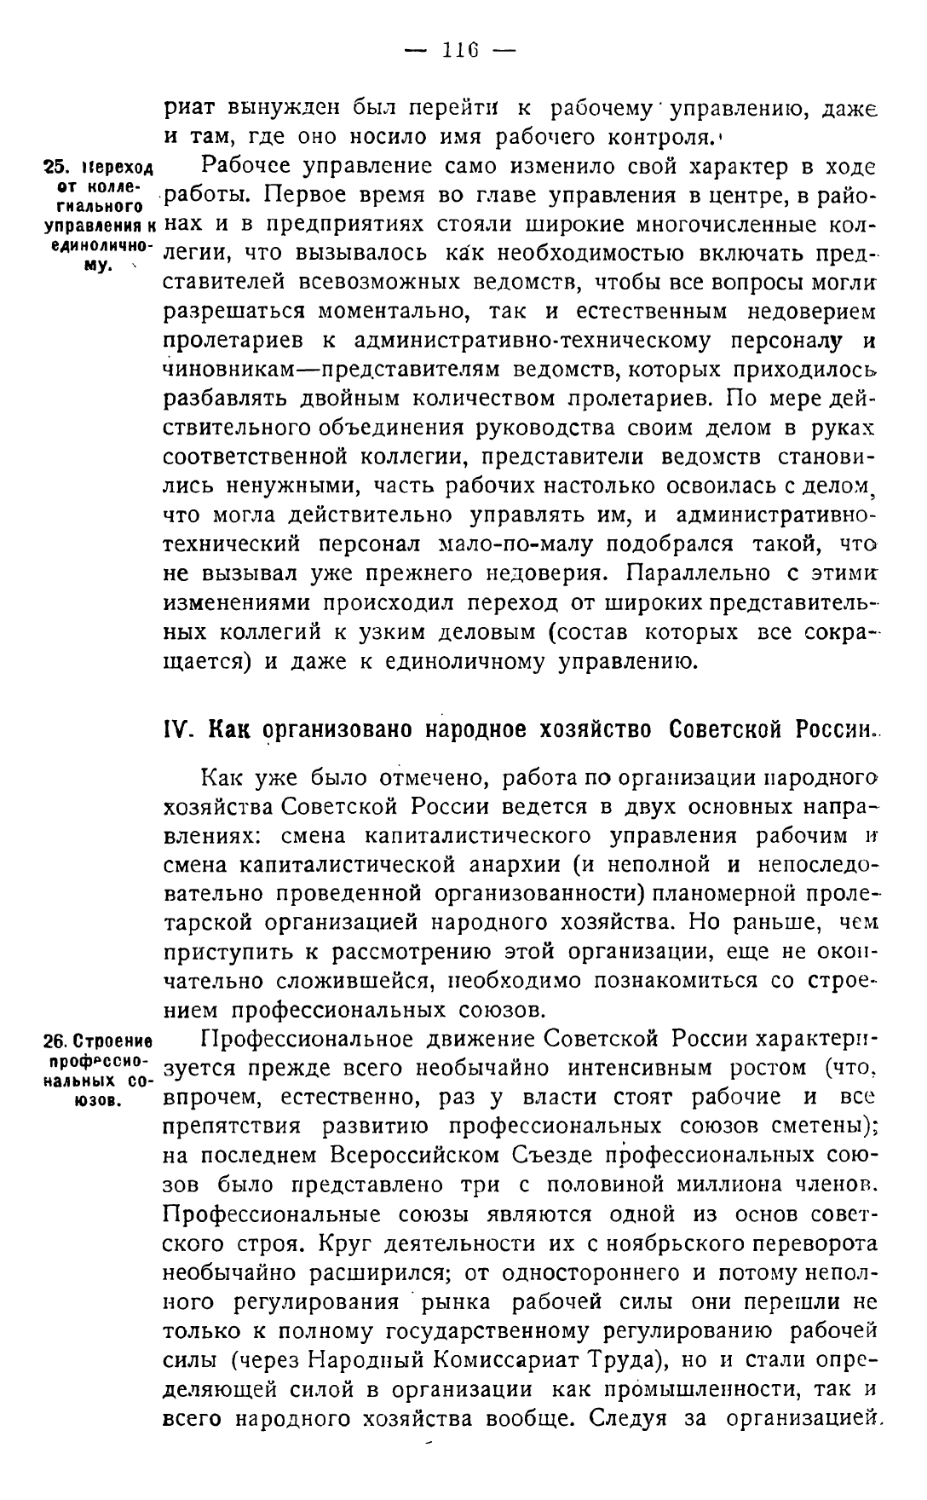 IV. Как организовано народное хозяйство Советской России